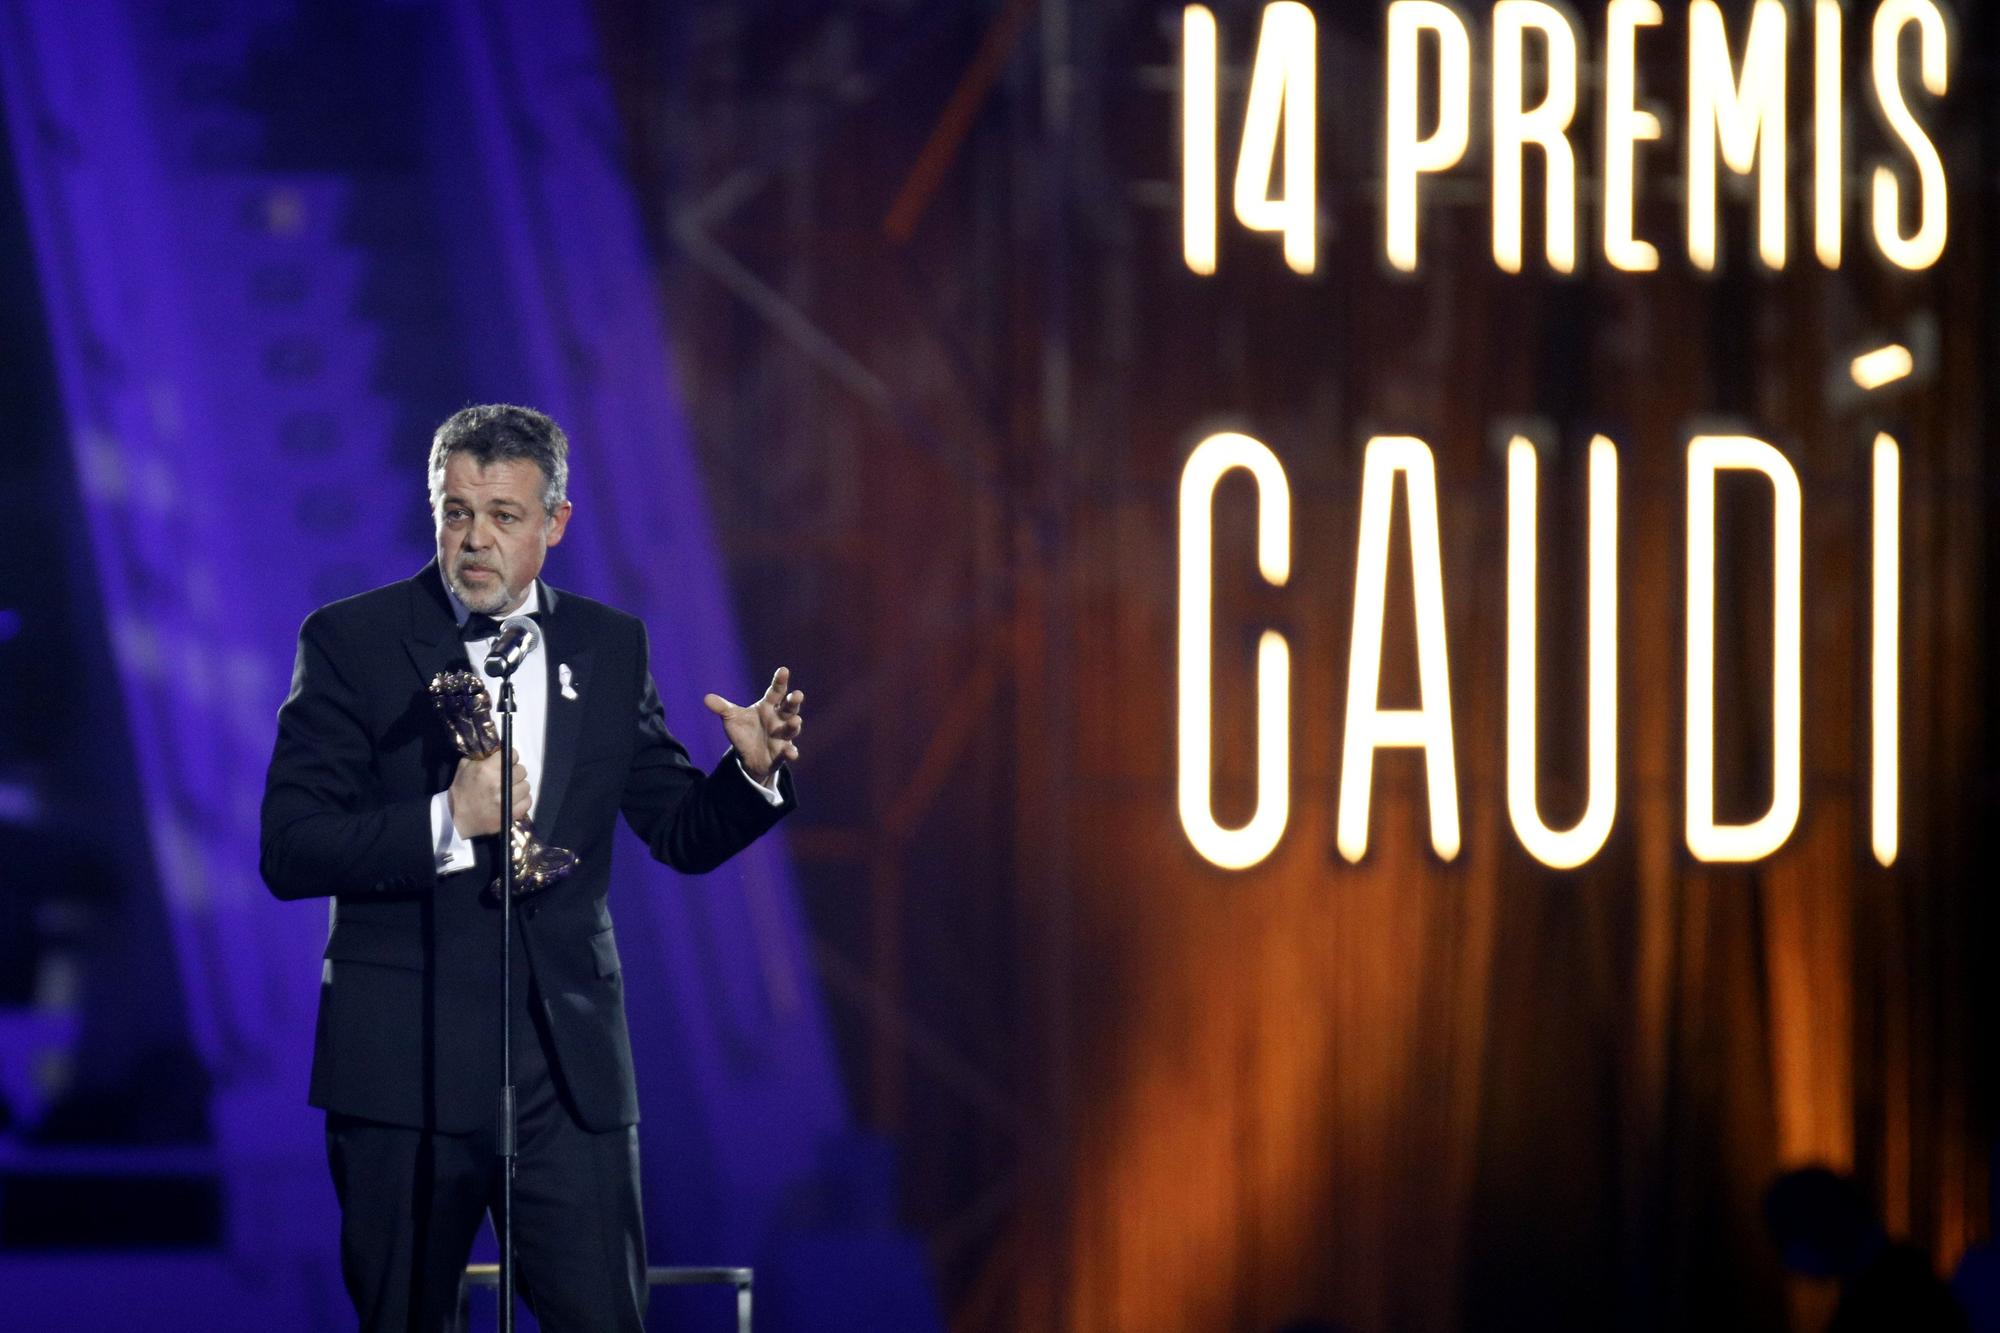 Les millors imatges dels Premis Gaudí 2022